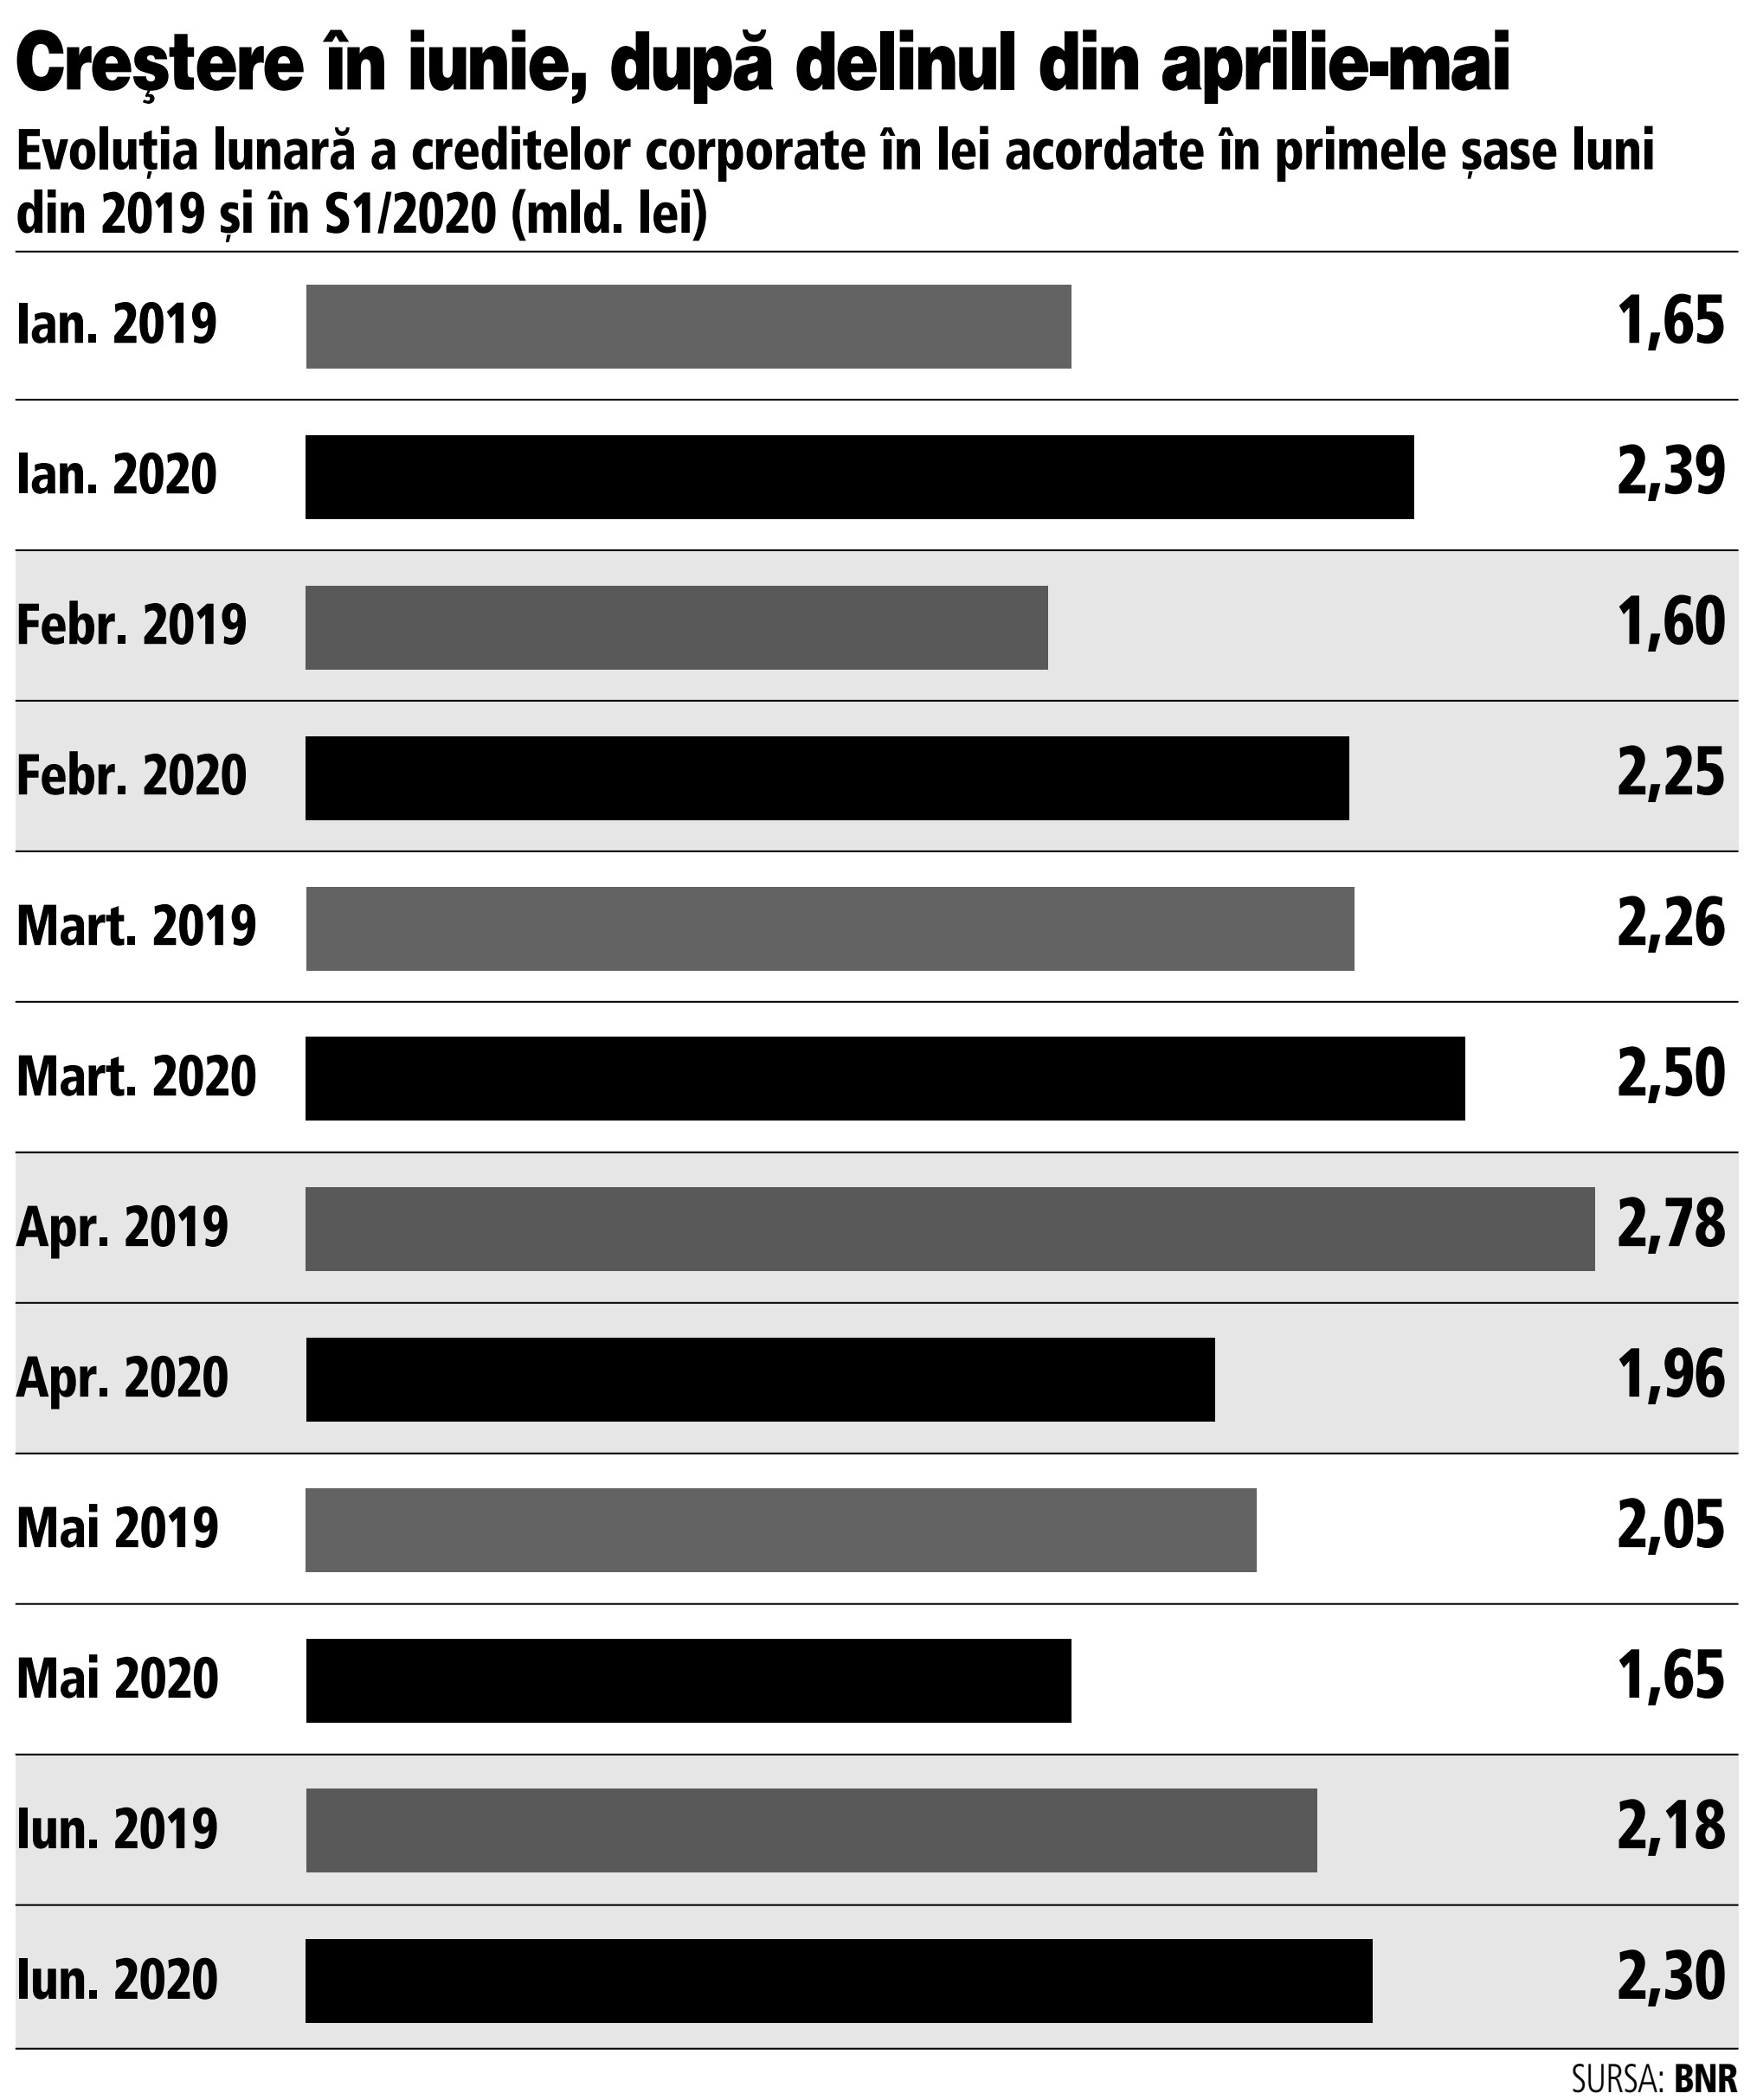 Creditarea corporate în lei s-a redresat în iunie, după declinul din aprilie şi mai, depăşind şi nivelul din iunie 2019. În S1/2020, creşterea a fost de peste 4% faţă de totalul creditelor corporate noi în lei din S1/2019